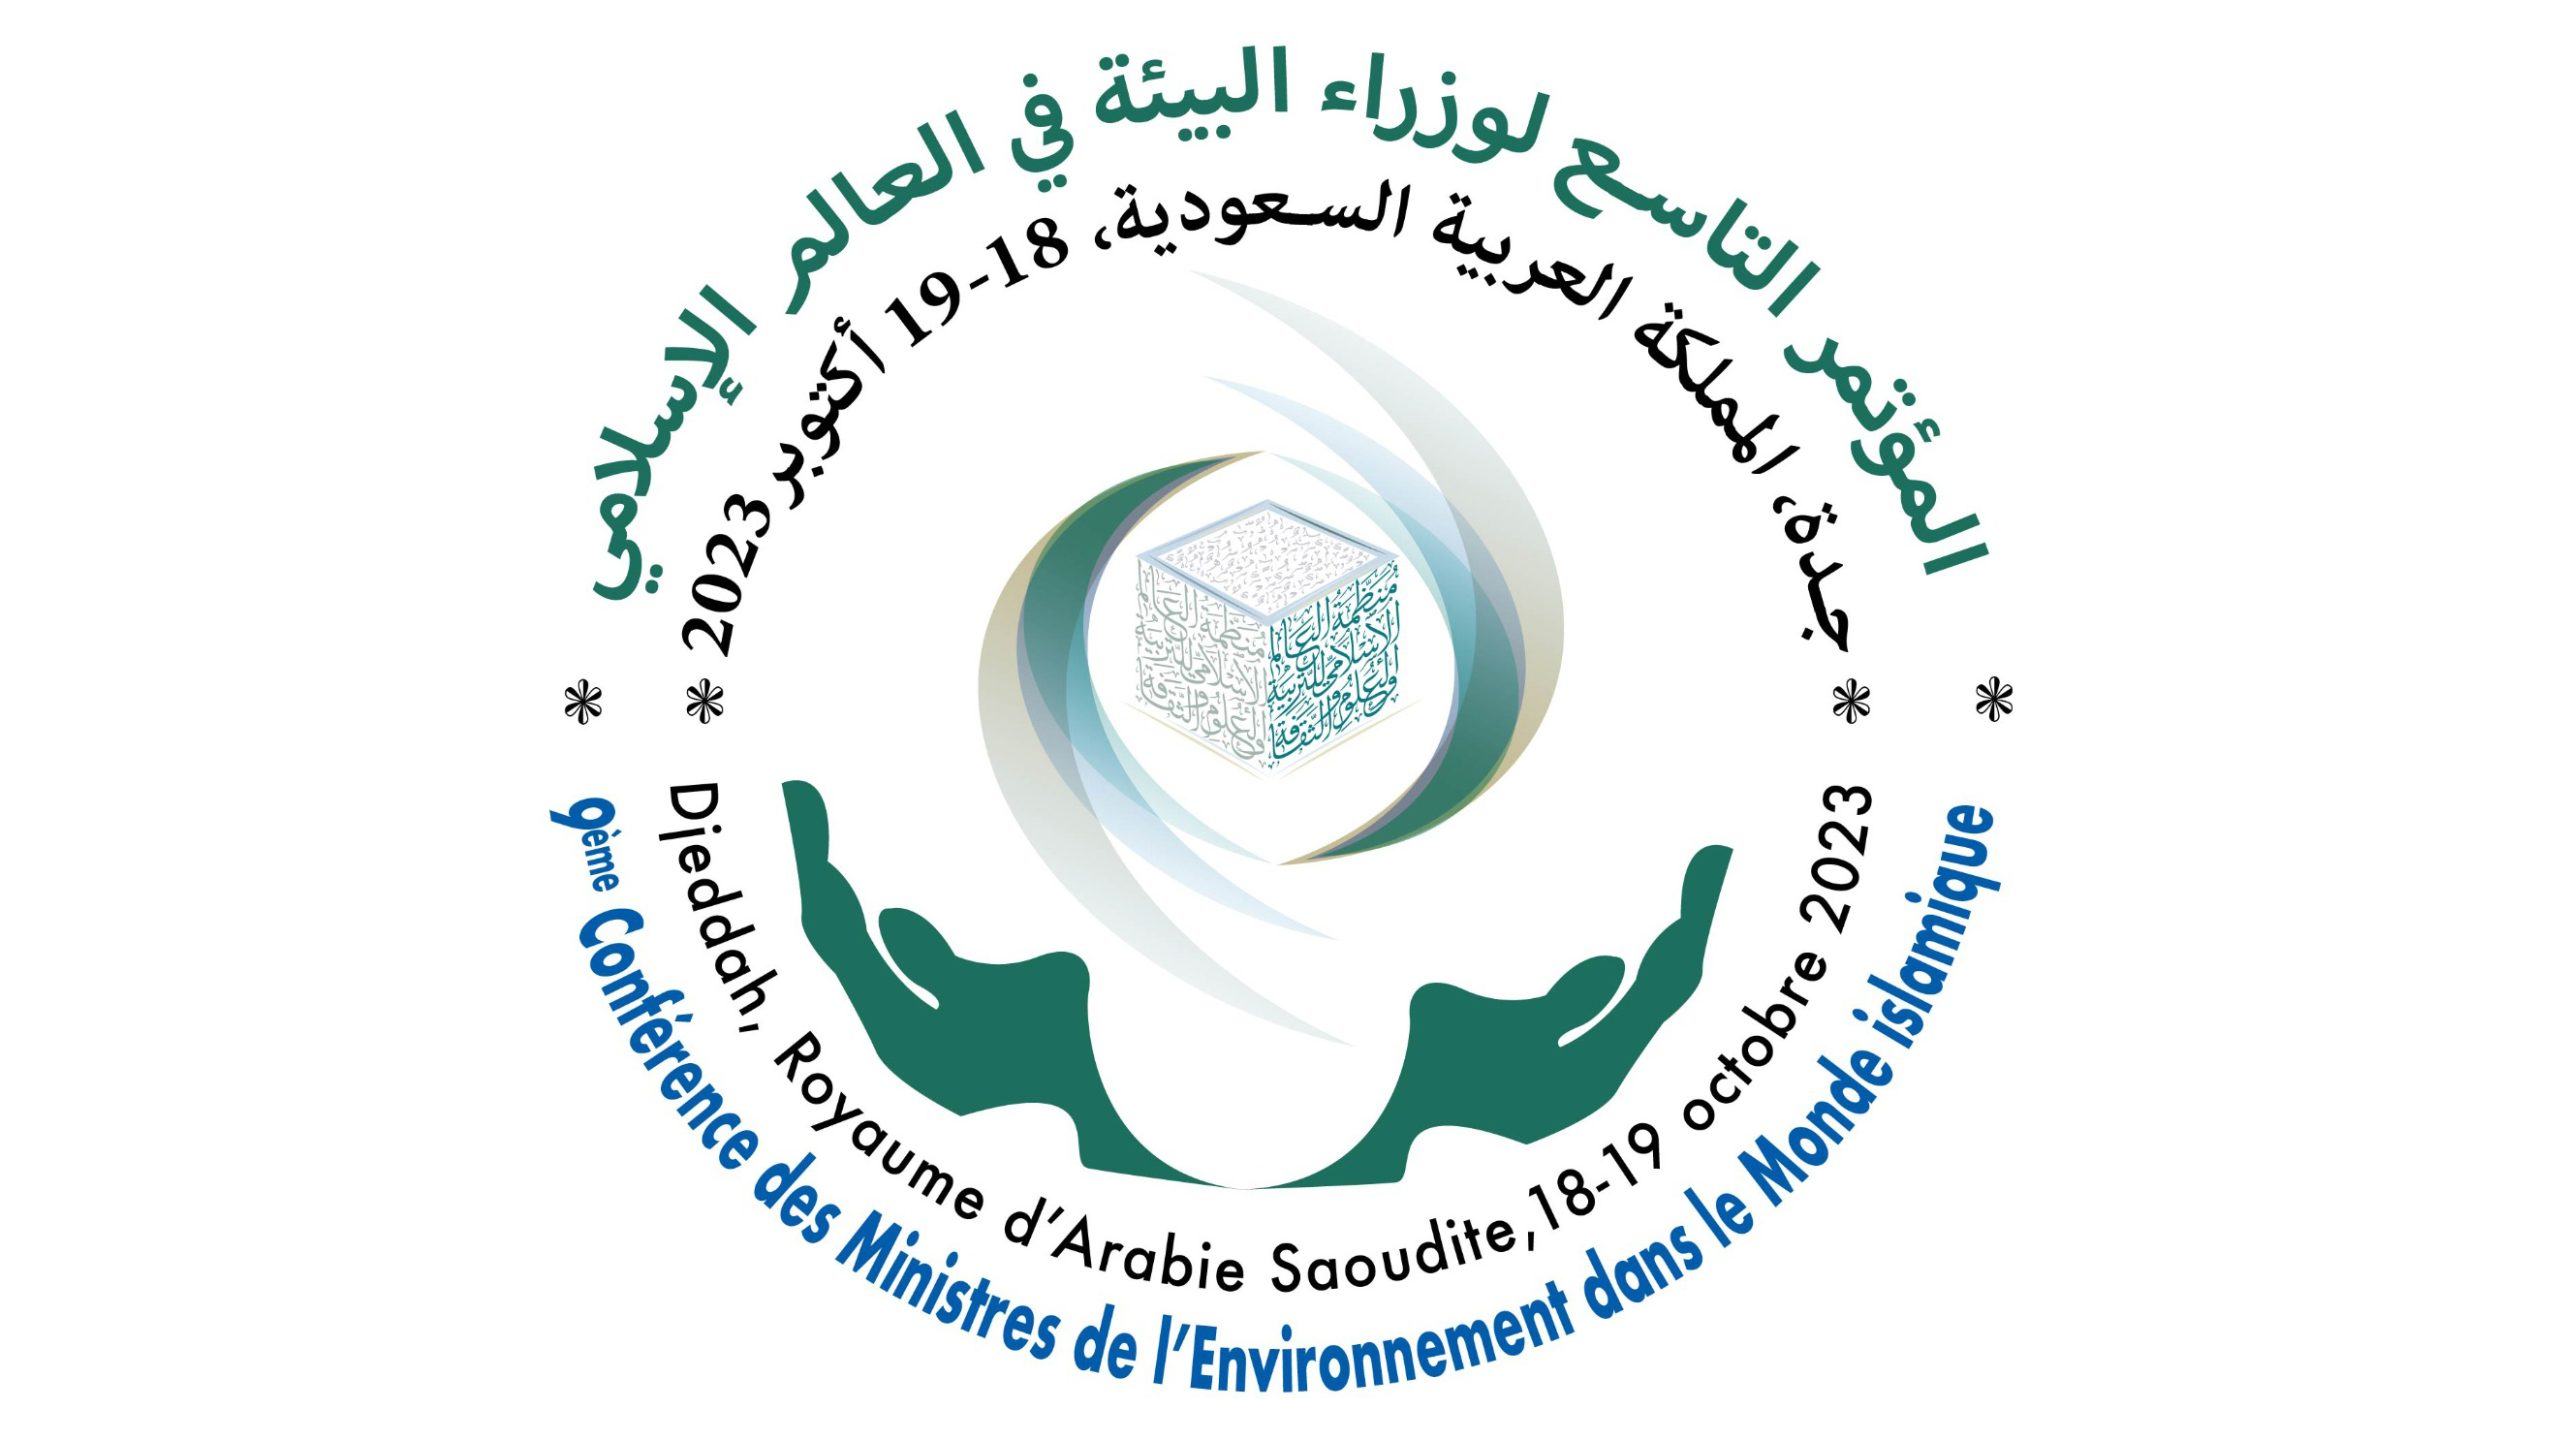 La semaine prochaine, Djeddah accueillera la 9ème Conférence des ministres de l’Environnement dans le monde islamique